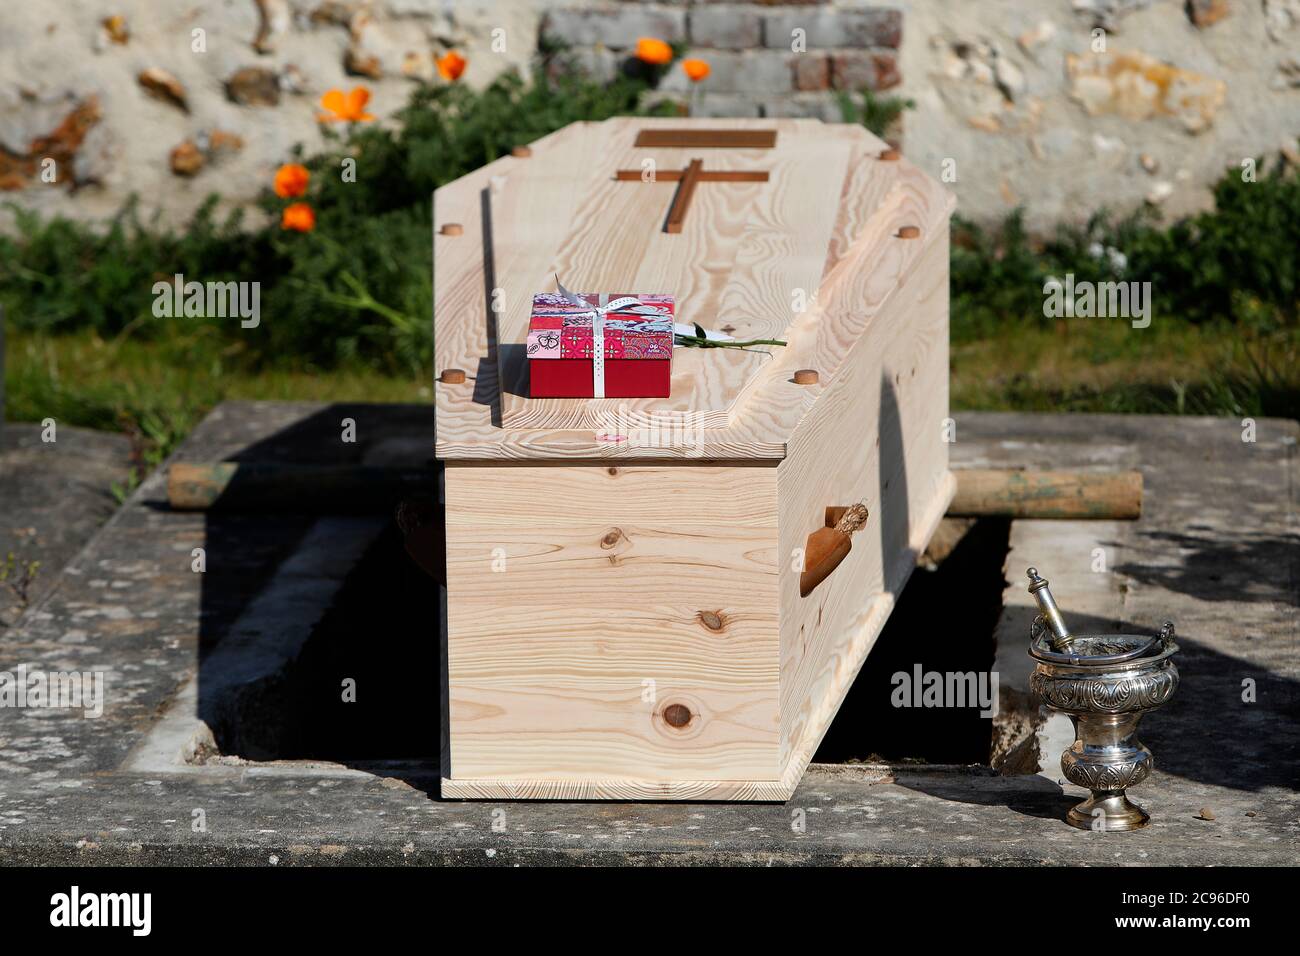 Funerali al cimitero di Evreux, Francia durante l'epidemia di COVID-19. Foto Stock